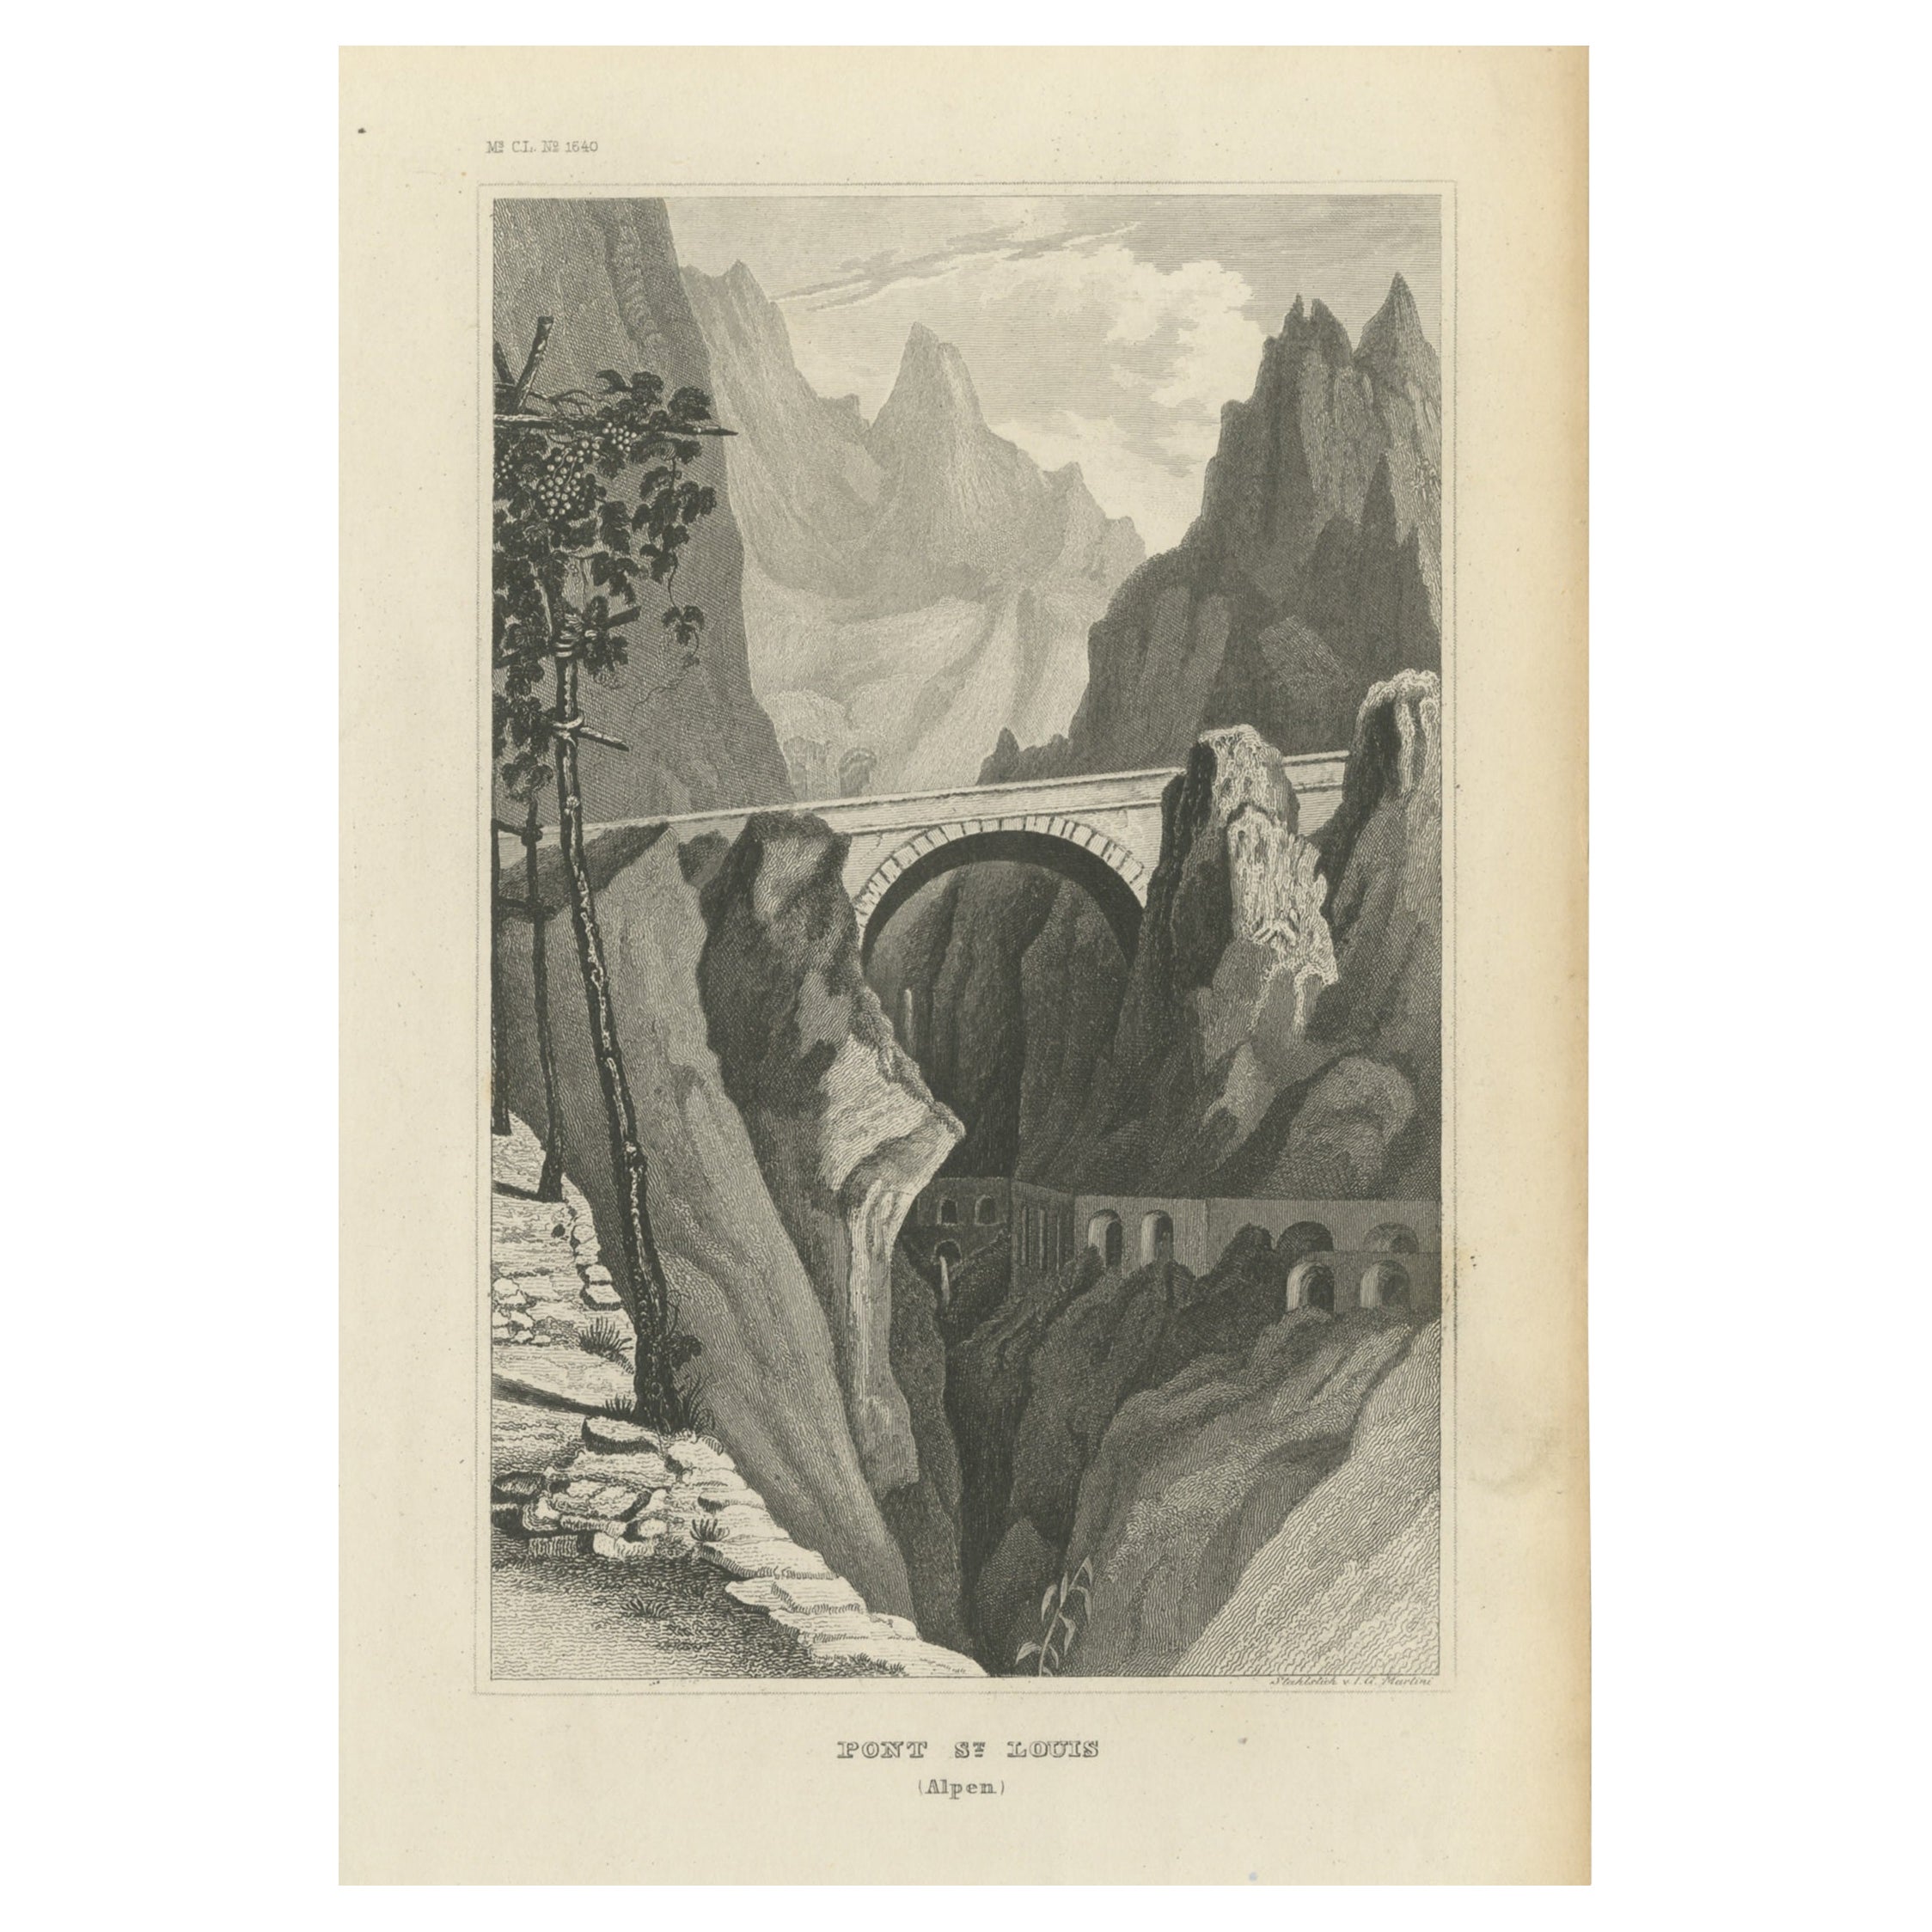 Antique Print of the Saint-Louis Bridge, Menton, Alpes-Maritimes